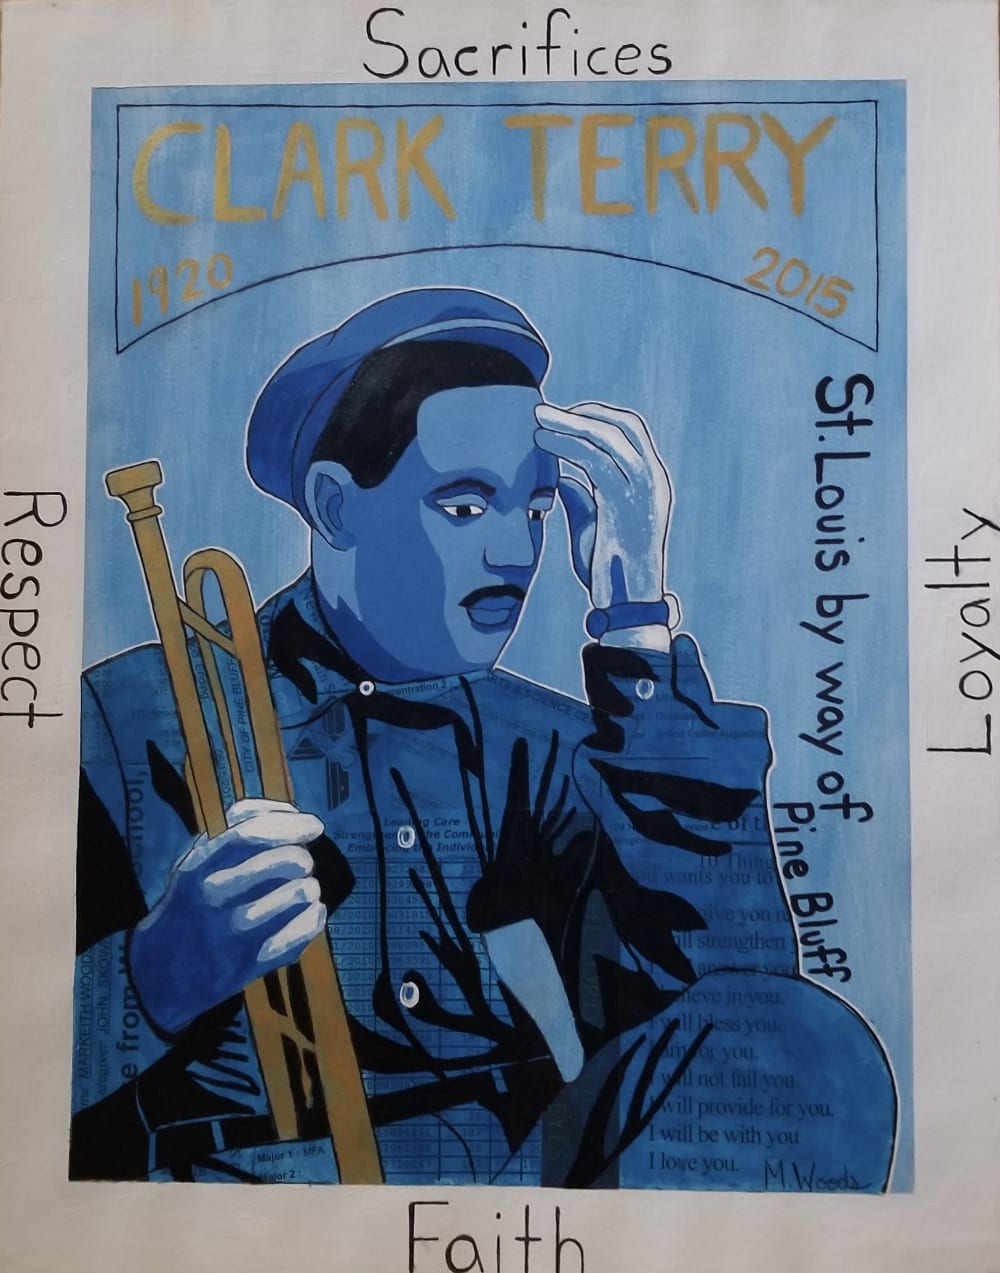 Clark Terry: Sacrifices, Loyalty, Respect, & Faith